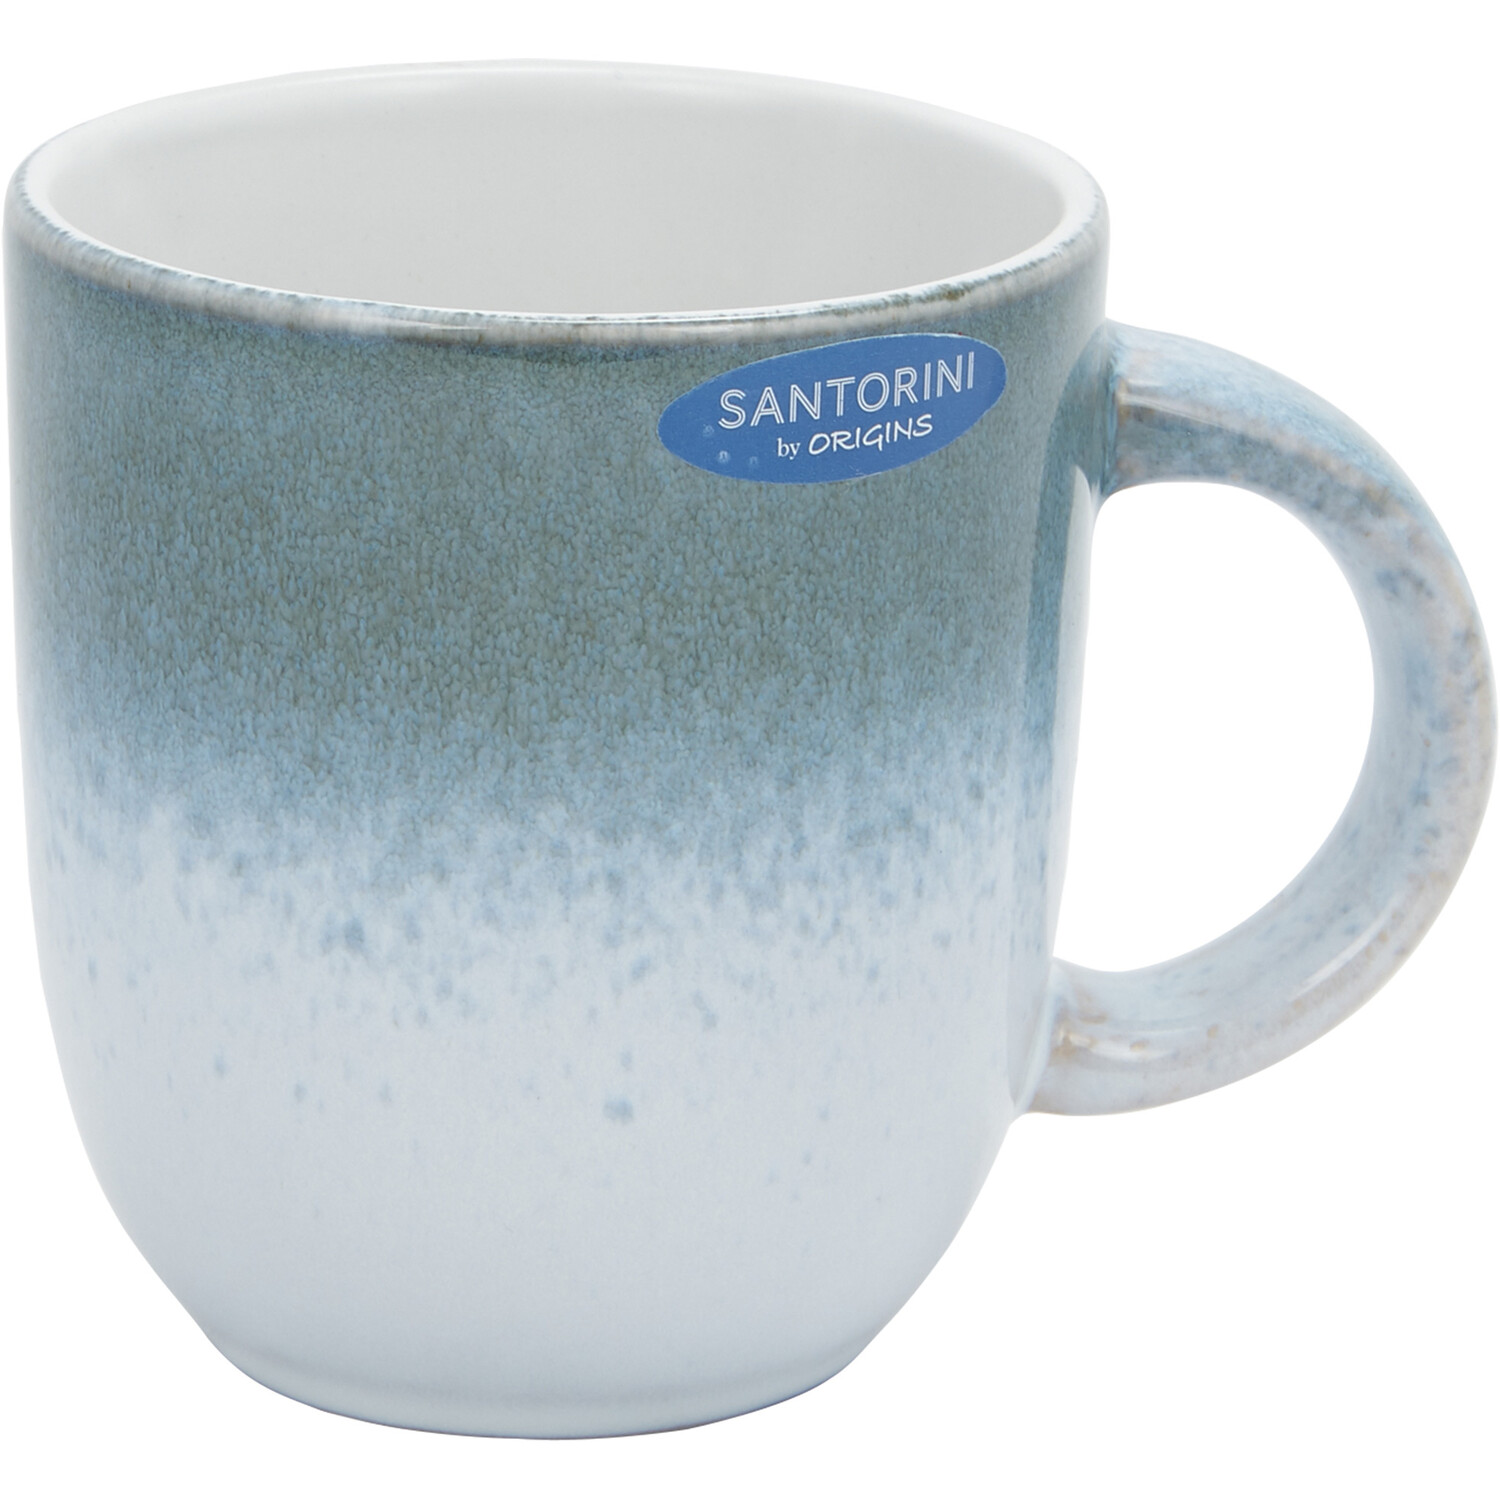 Santorini Reactive Glaze Mug - Blue Image 1